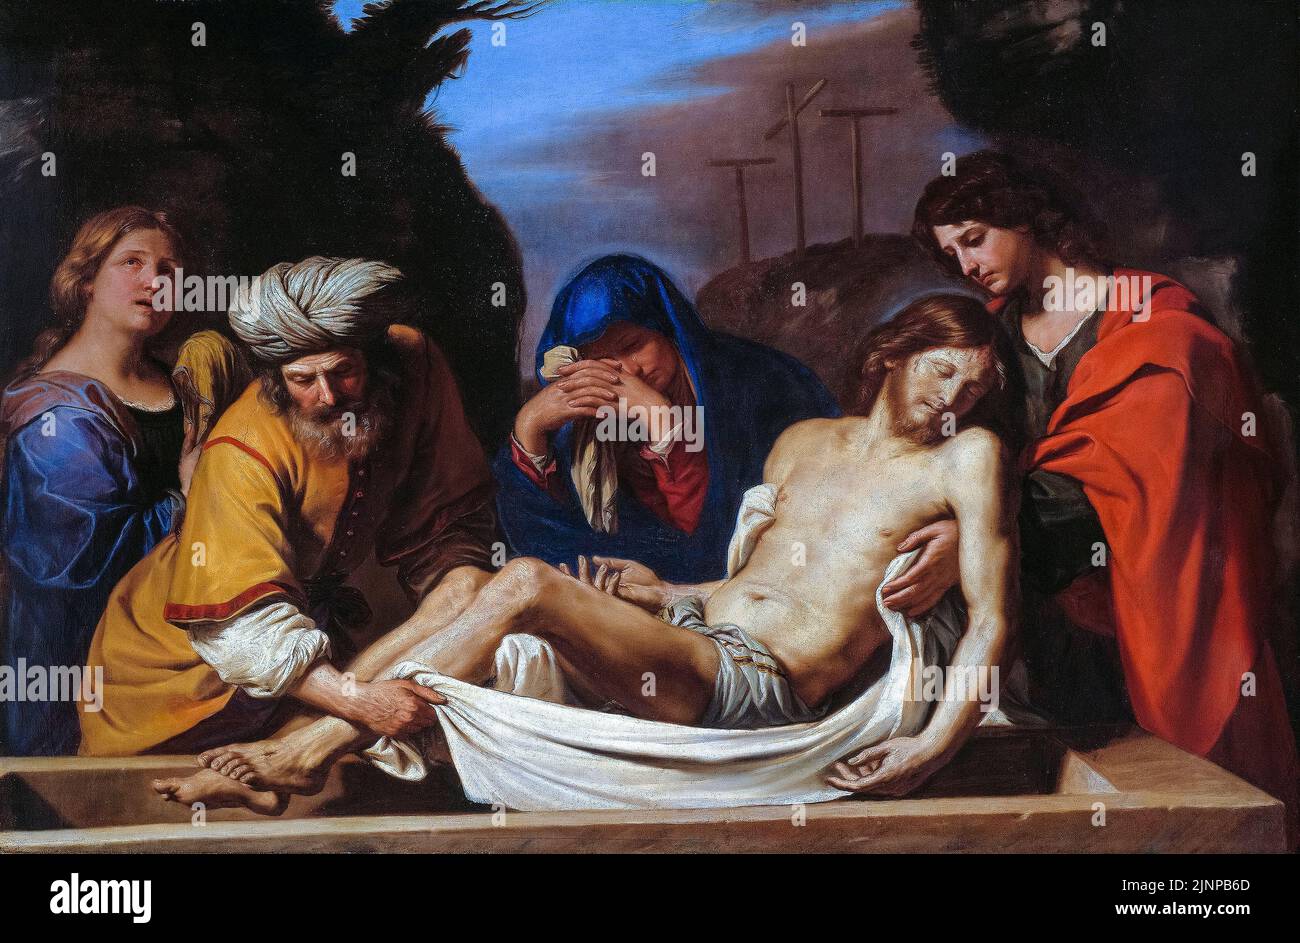 L'Entombment, peinture dans l'huile sur toile par Giovanni Francesco Barbieri appelé Guercino, vers 1656 Banque D'Images